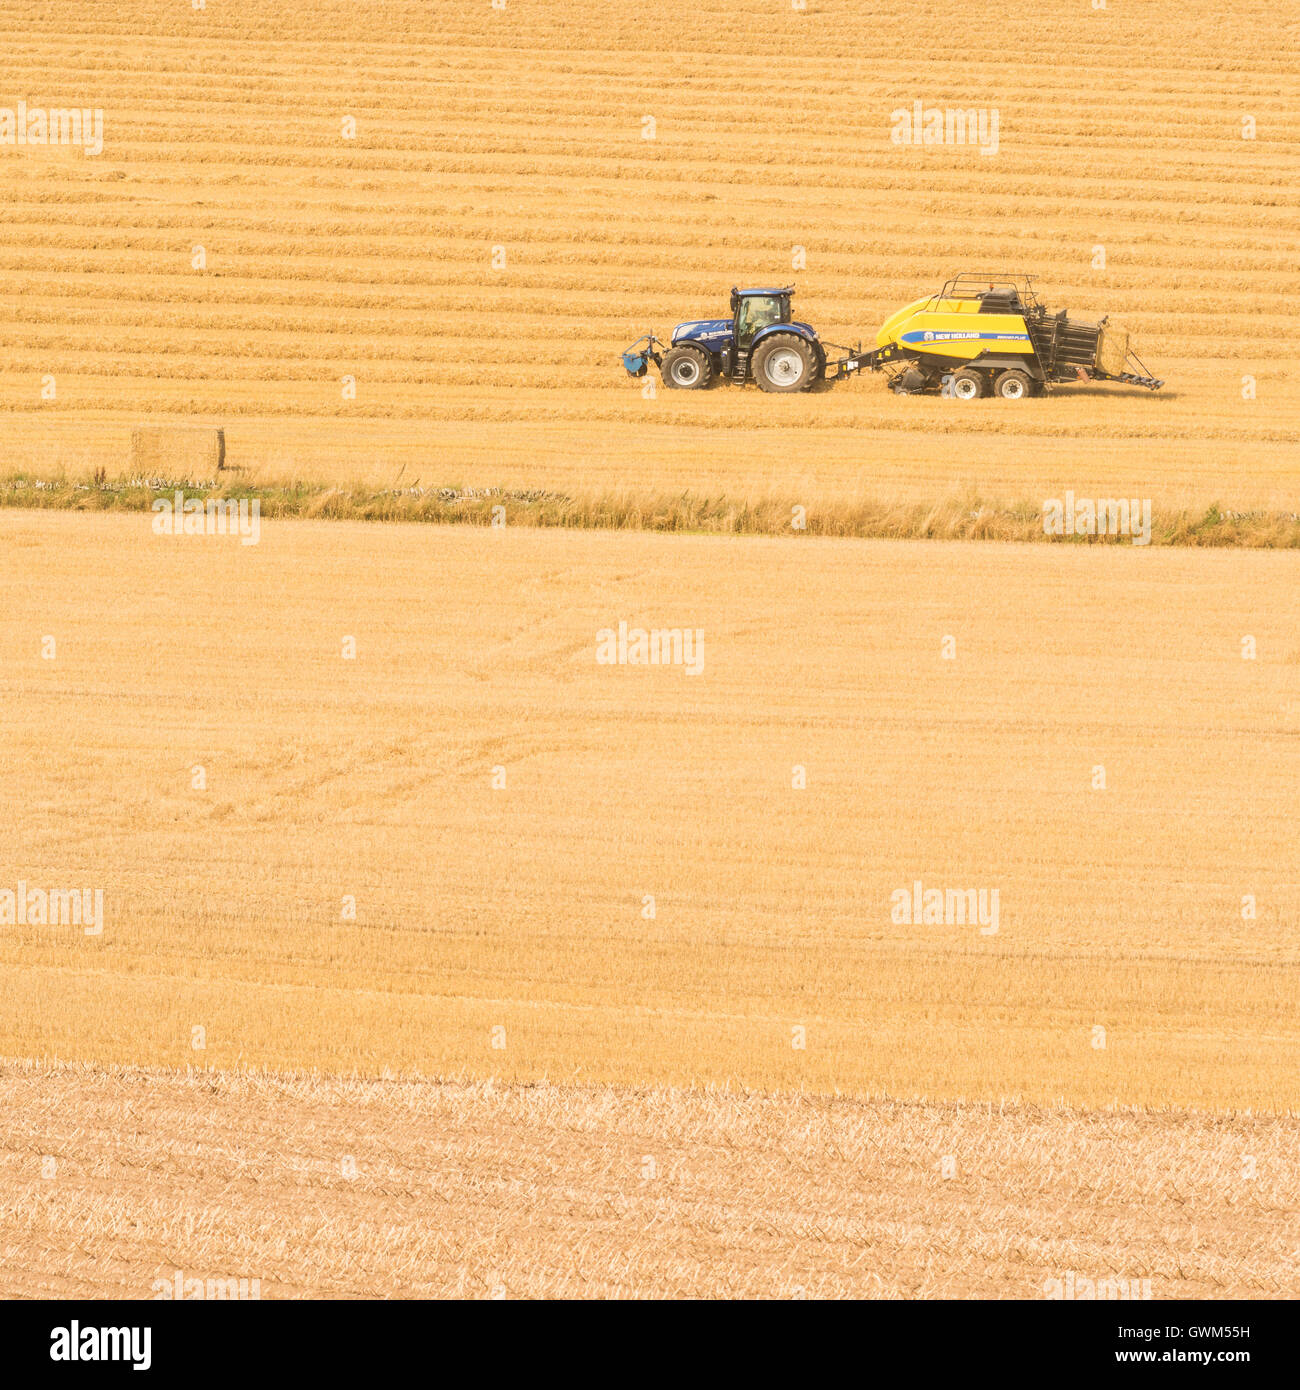 L'agriculture moderne en Ecosse - le tracteur et la presse des bottes de paille rectangulaires Banque D'Images